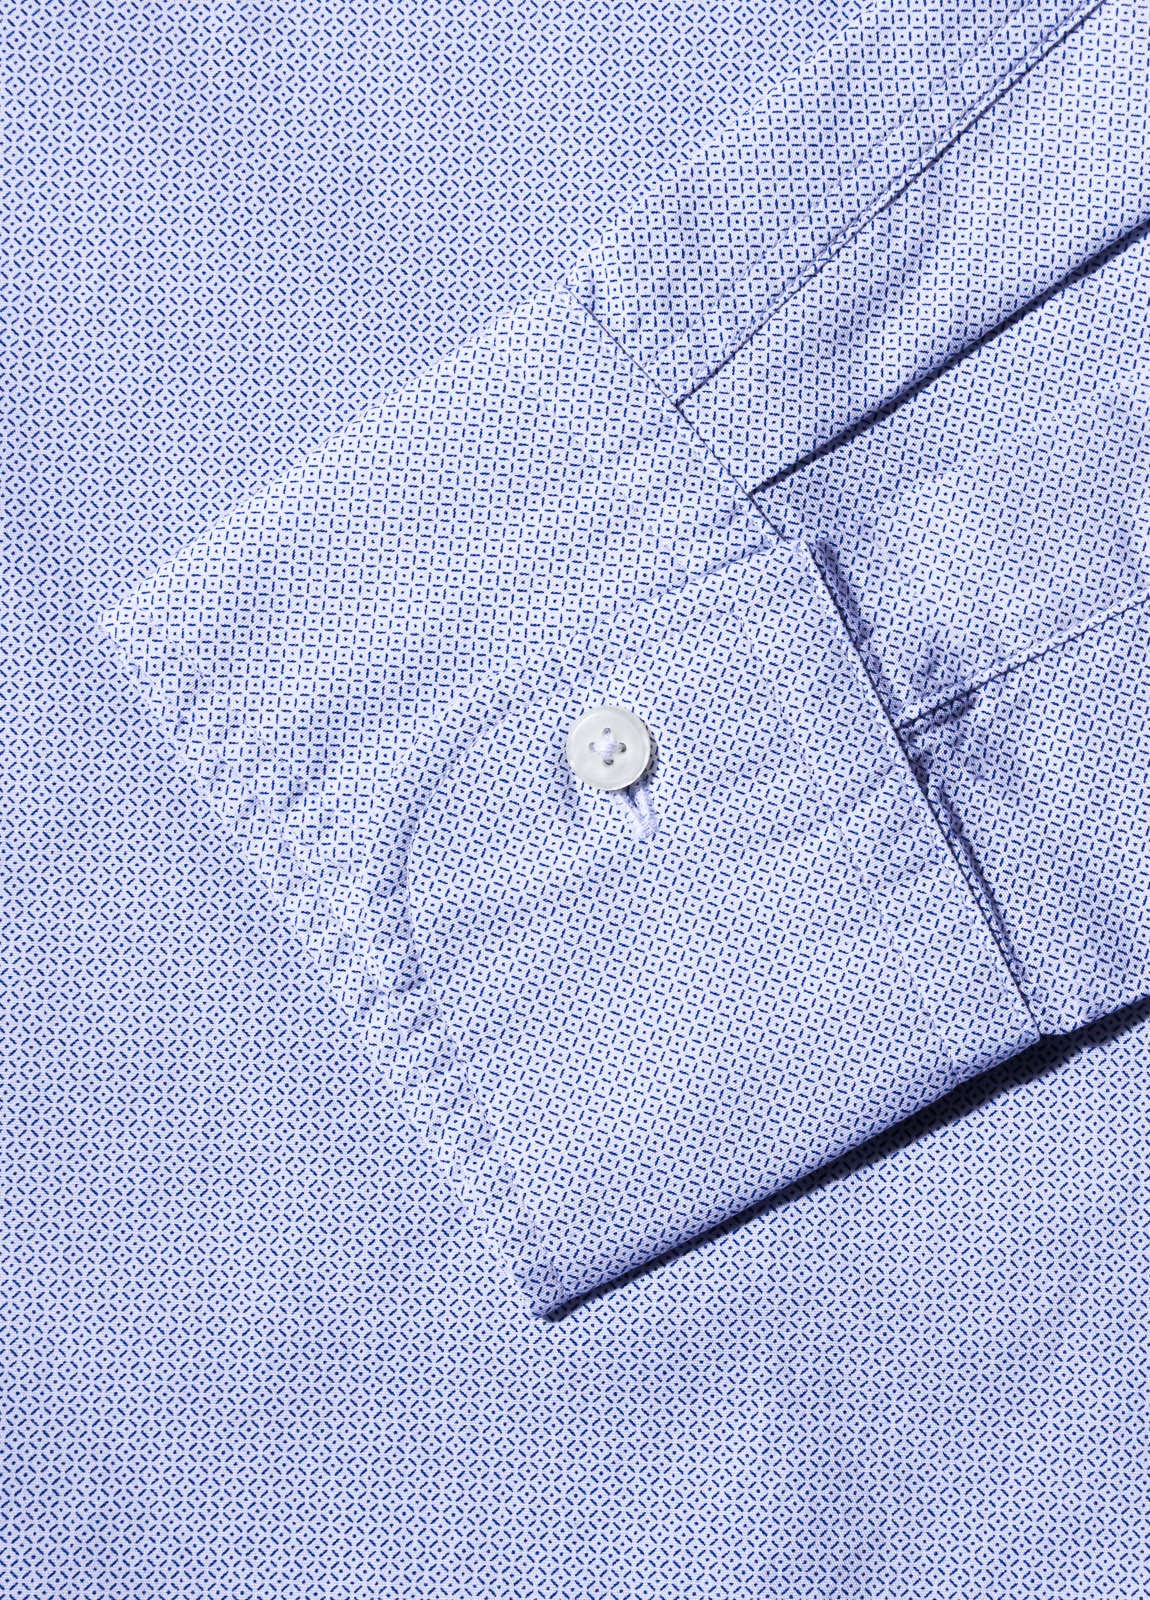 Camisa sport FUREST COLECCION microdibujo azul - Ítem2